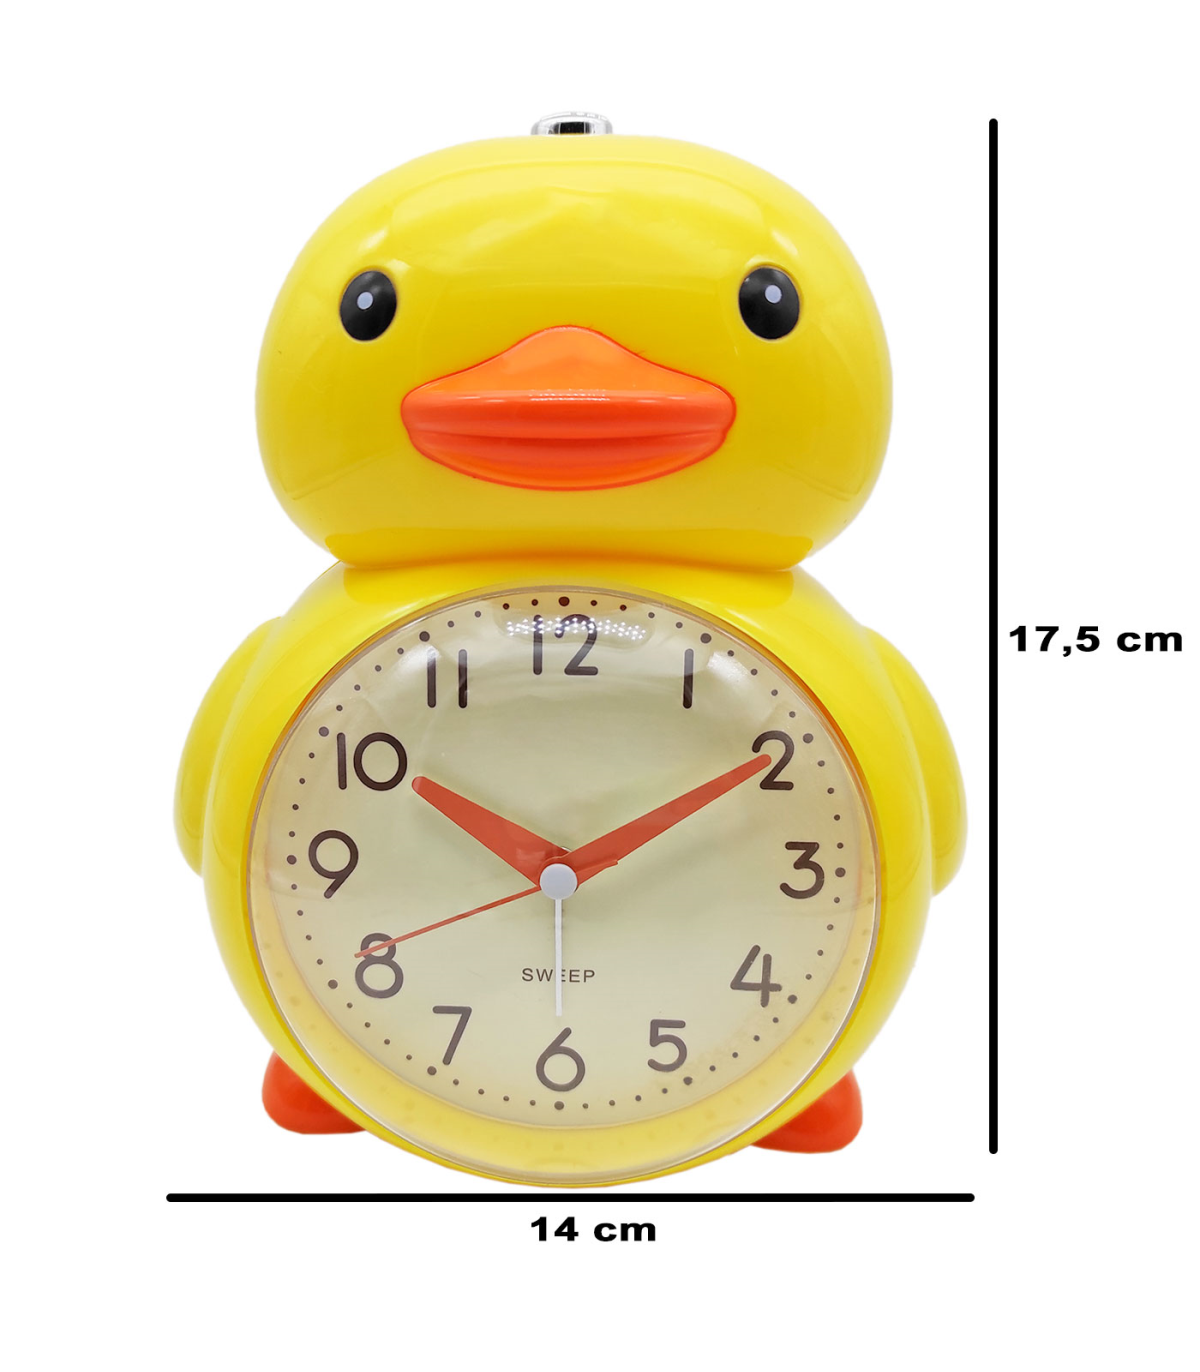 Tradineur - Reloj despertador analógico infantil de plástico, incluye luz y  función snooze, botón de apagado, funcionamiento con